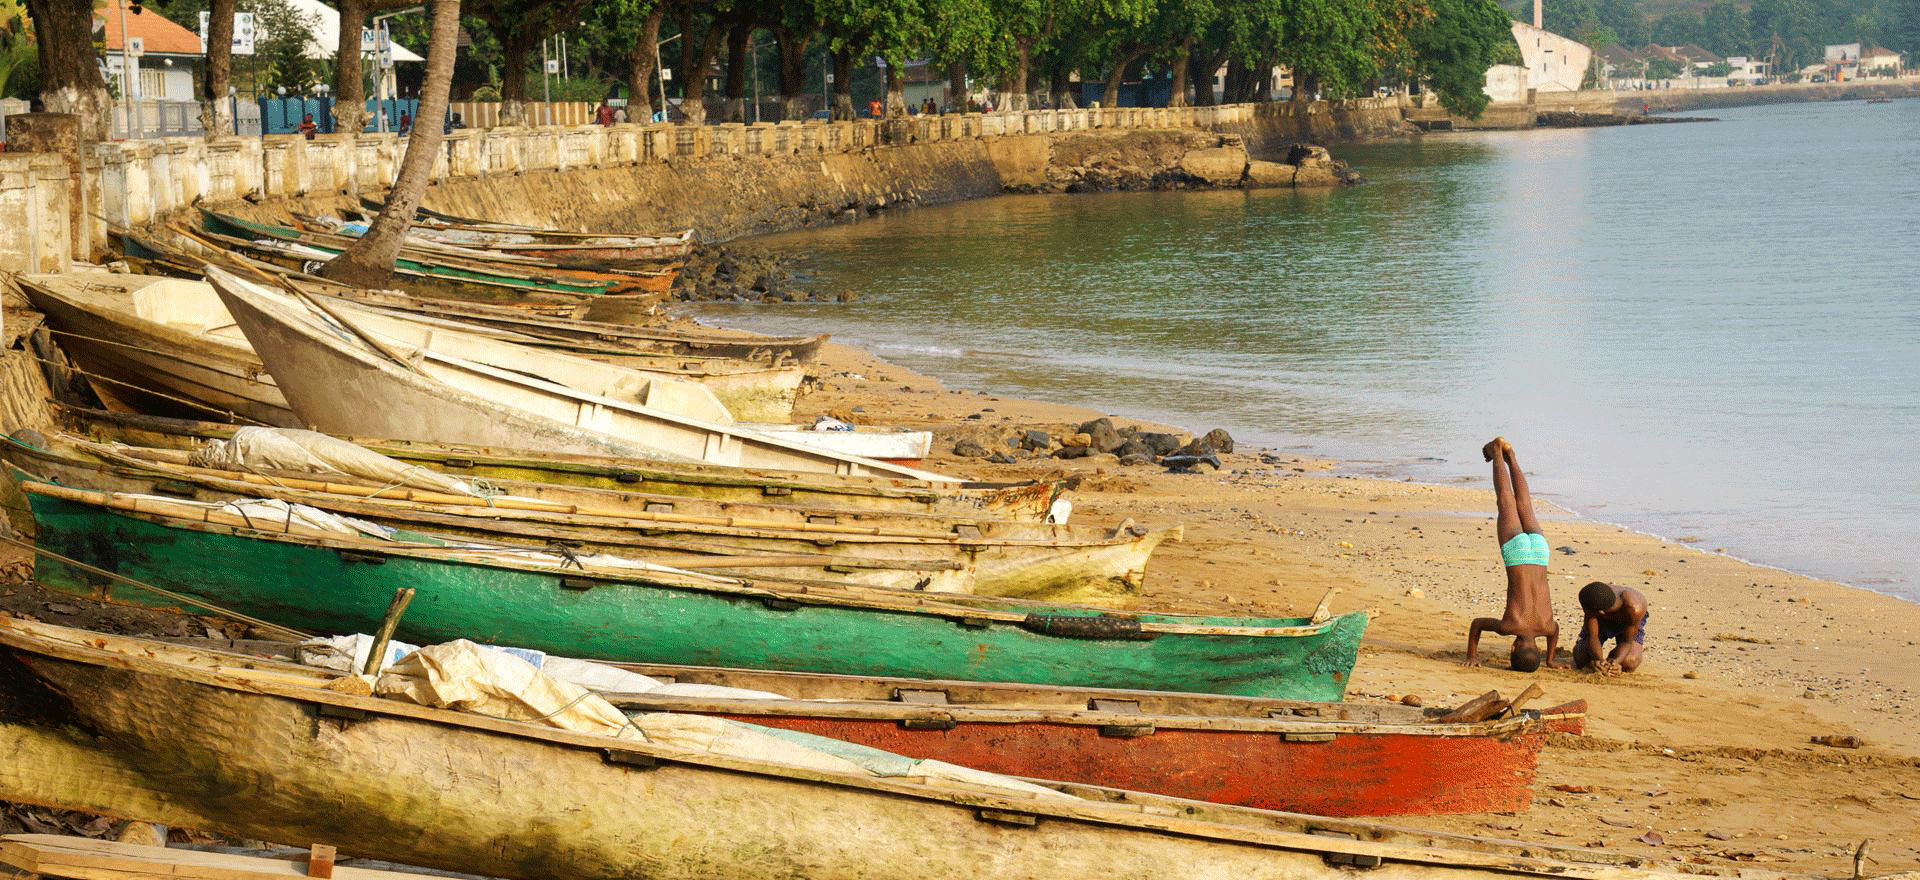 Fishing boats - Equatorial Guinea tour